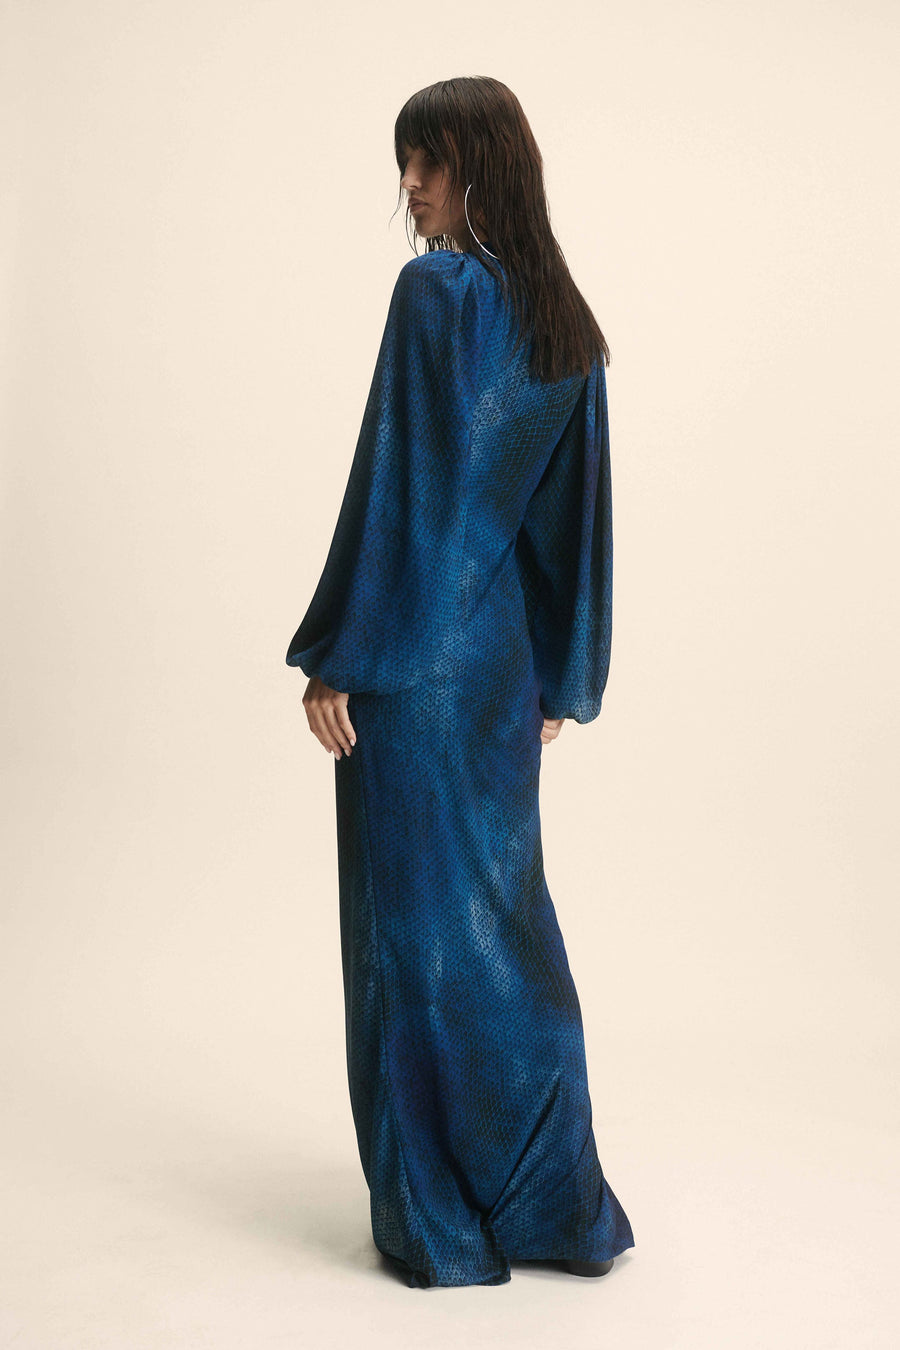 INDOCHINE MAXI DRESS IN BASILISK BLUE CHIFFON